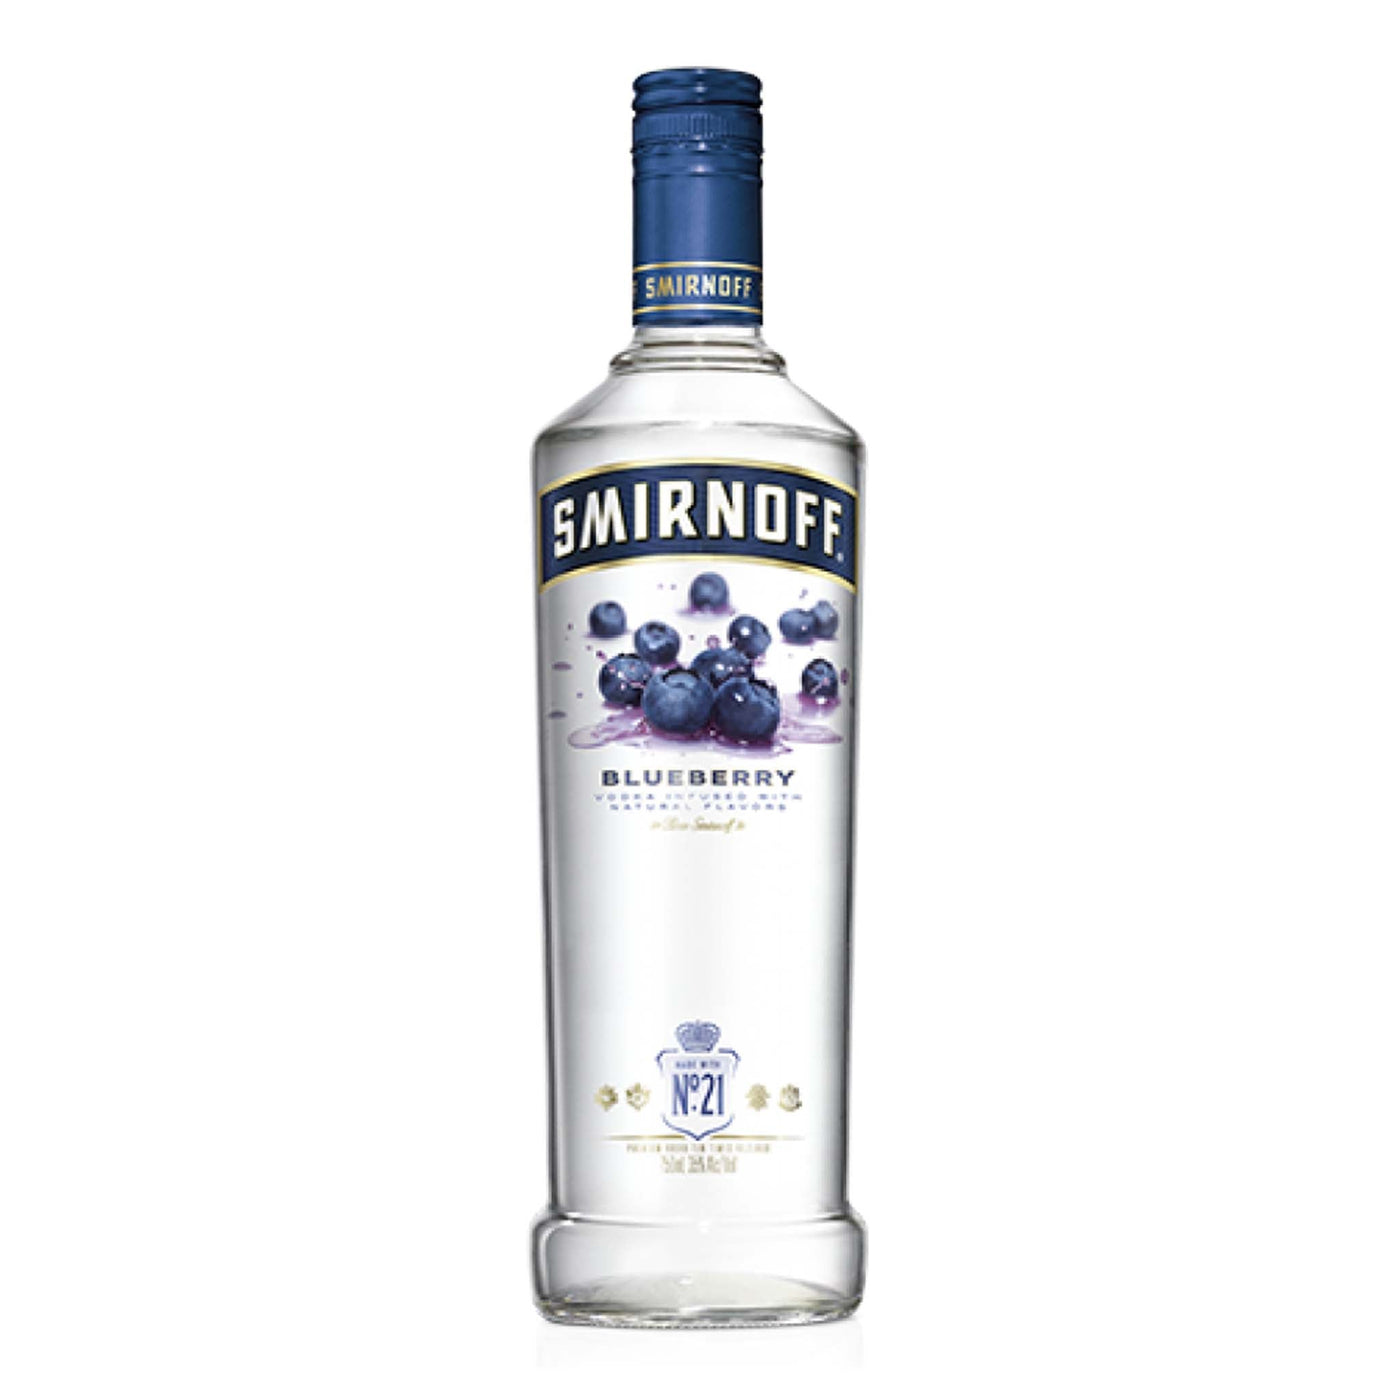 Smirnoff Blueberry Vodka - Spiritly